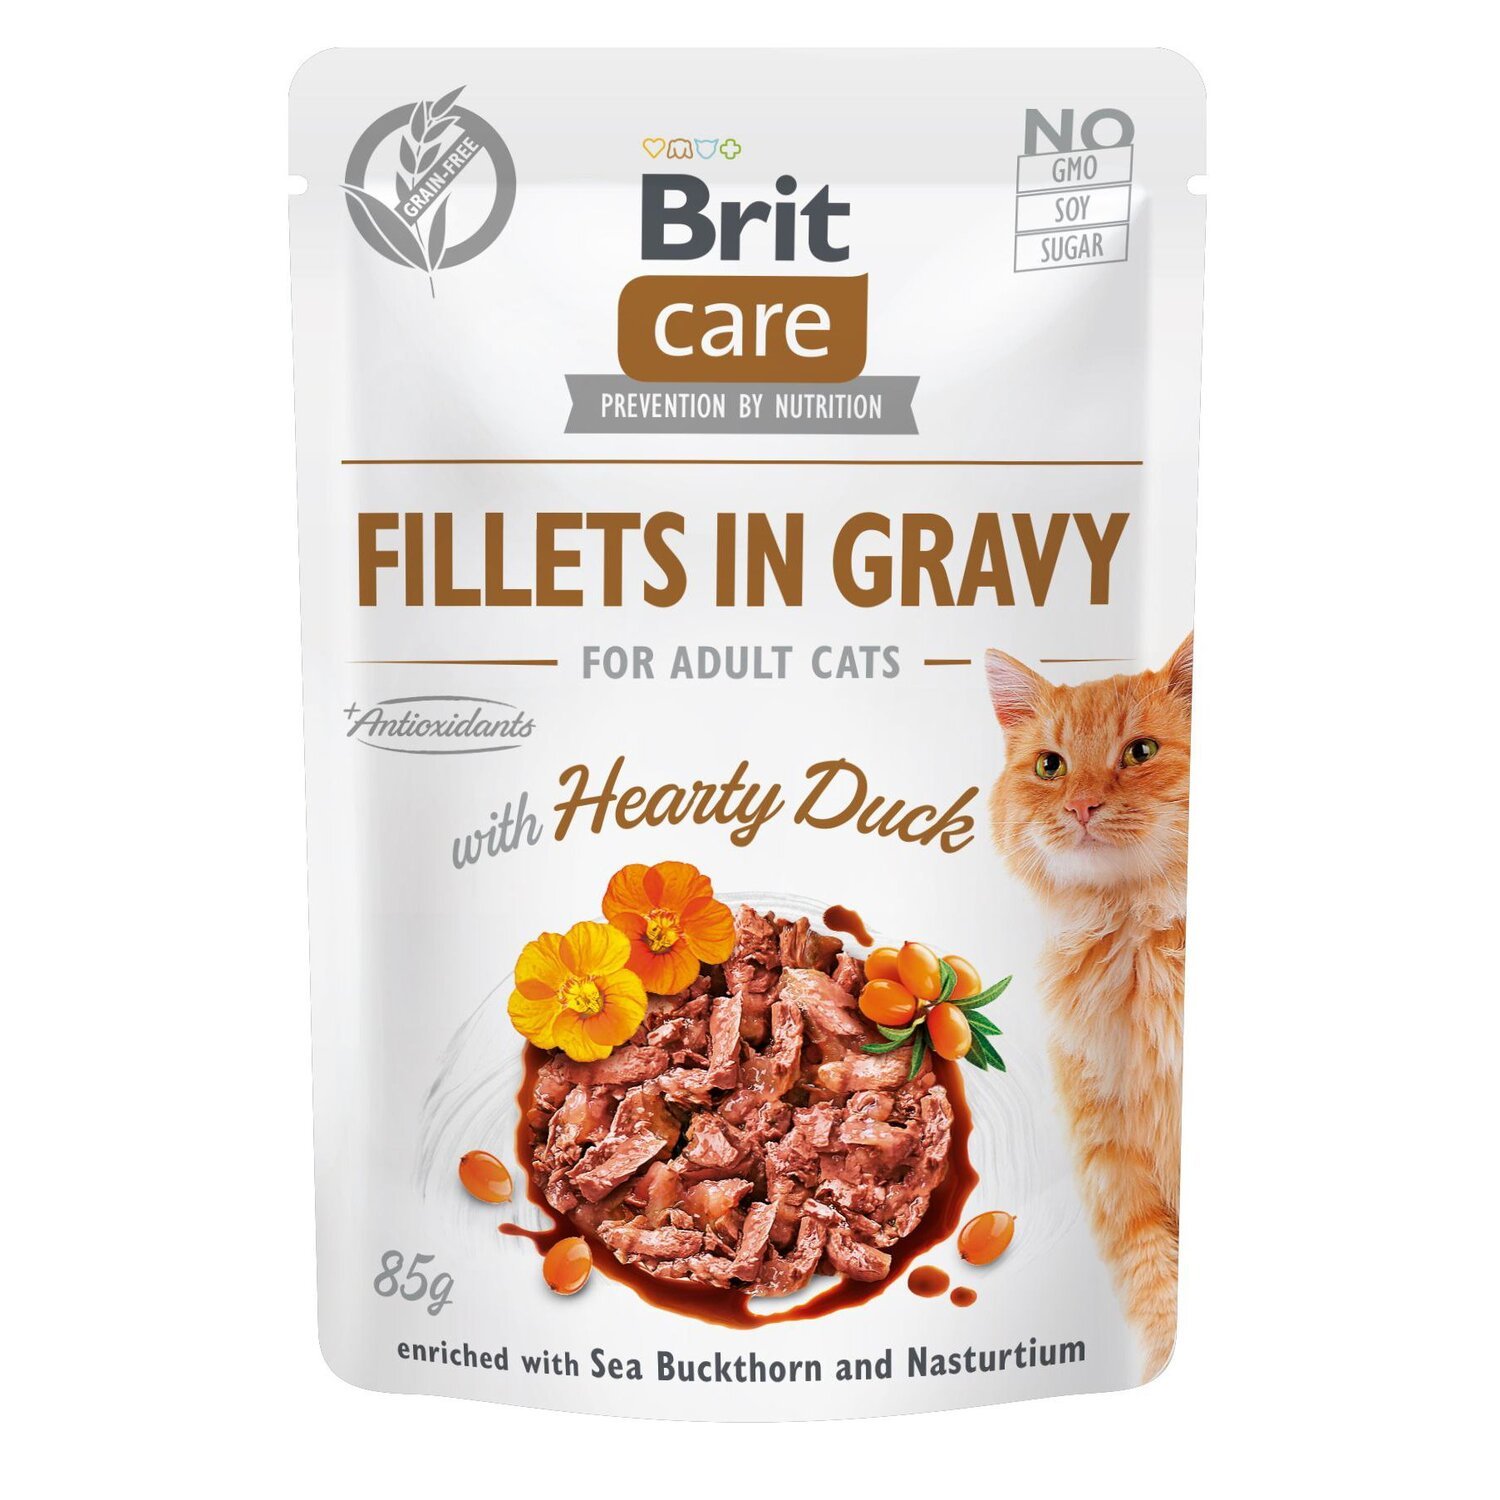 Влажный корм для кошек Brit Care Cat pouch 85г филе в соусе с уткой фото 